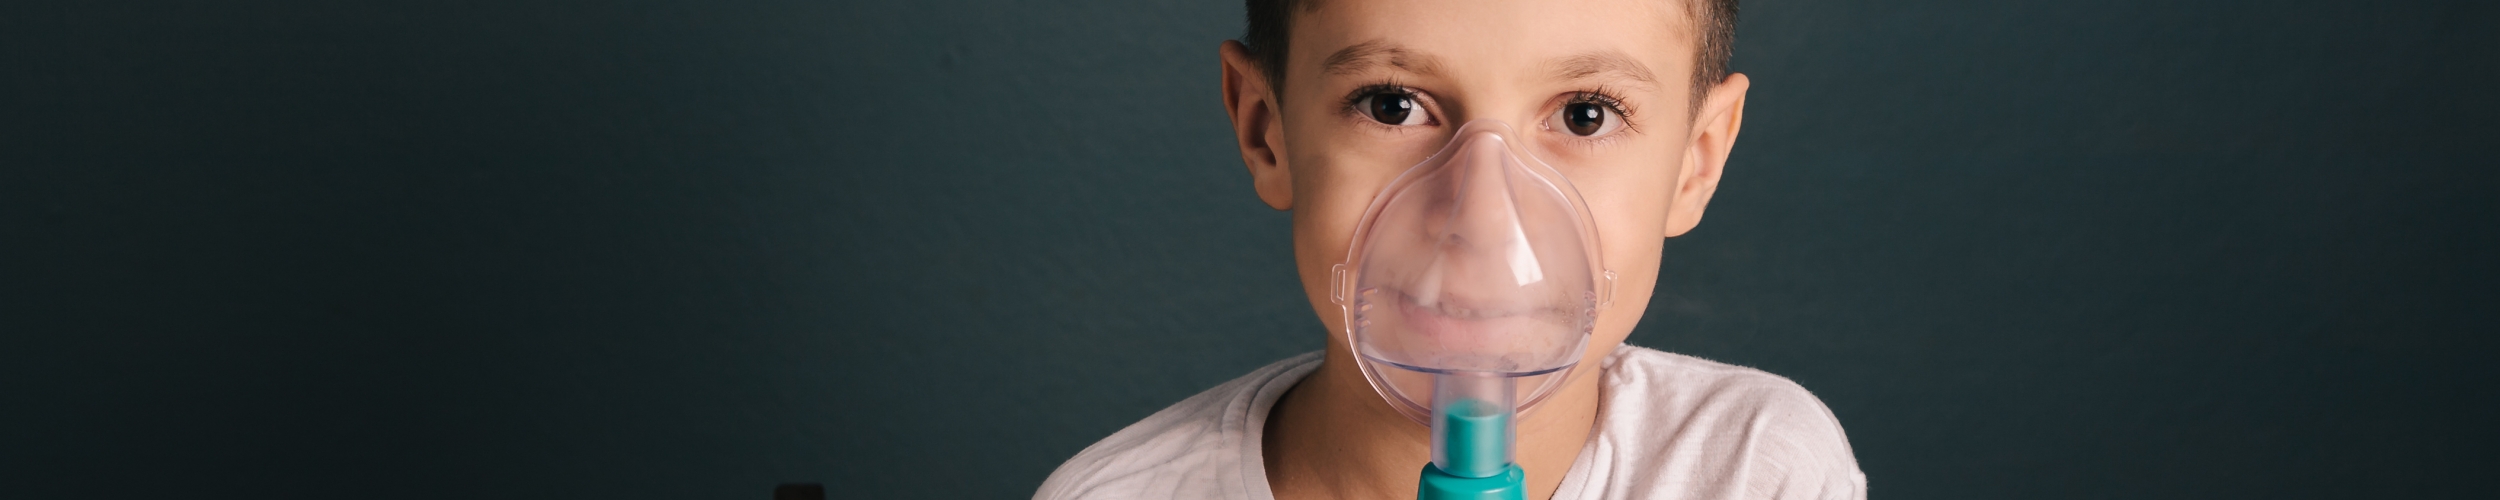 Enfant en traitement médical par aérosolthérapie médicamenteux ou non